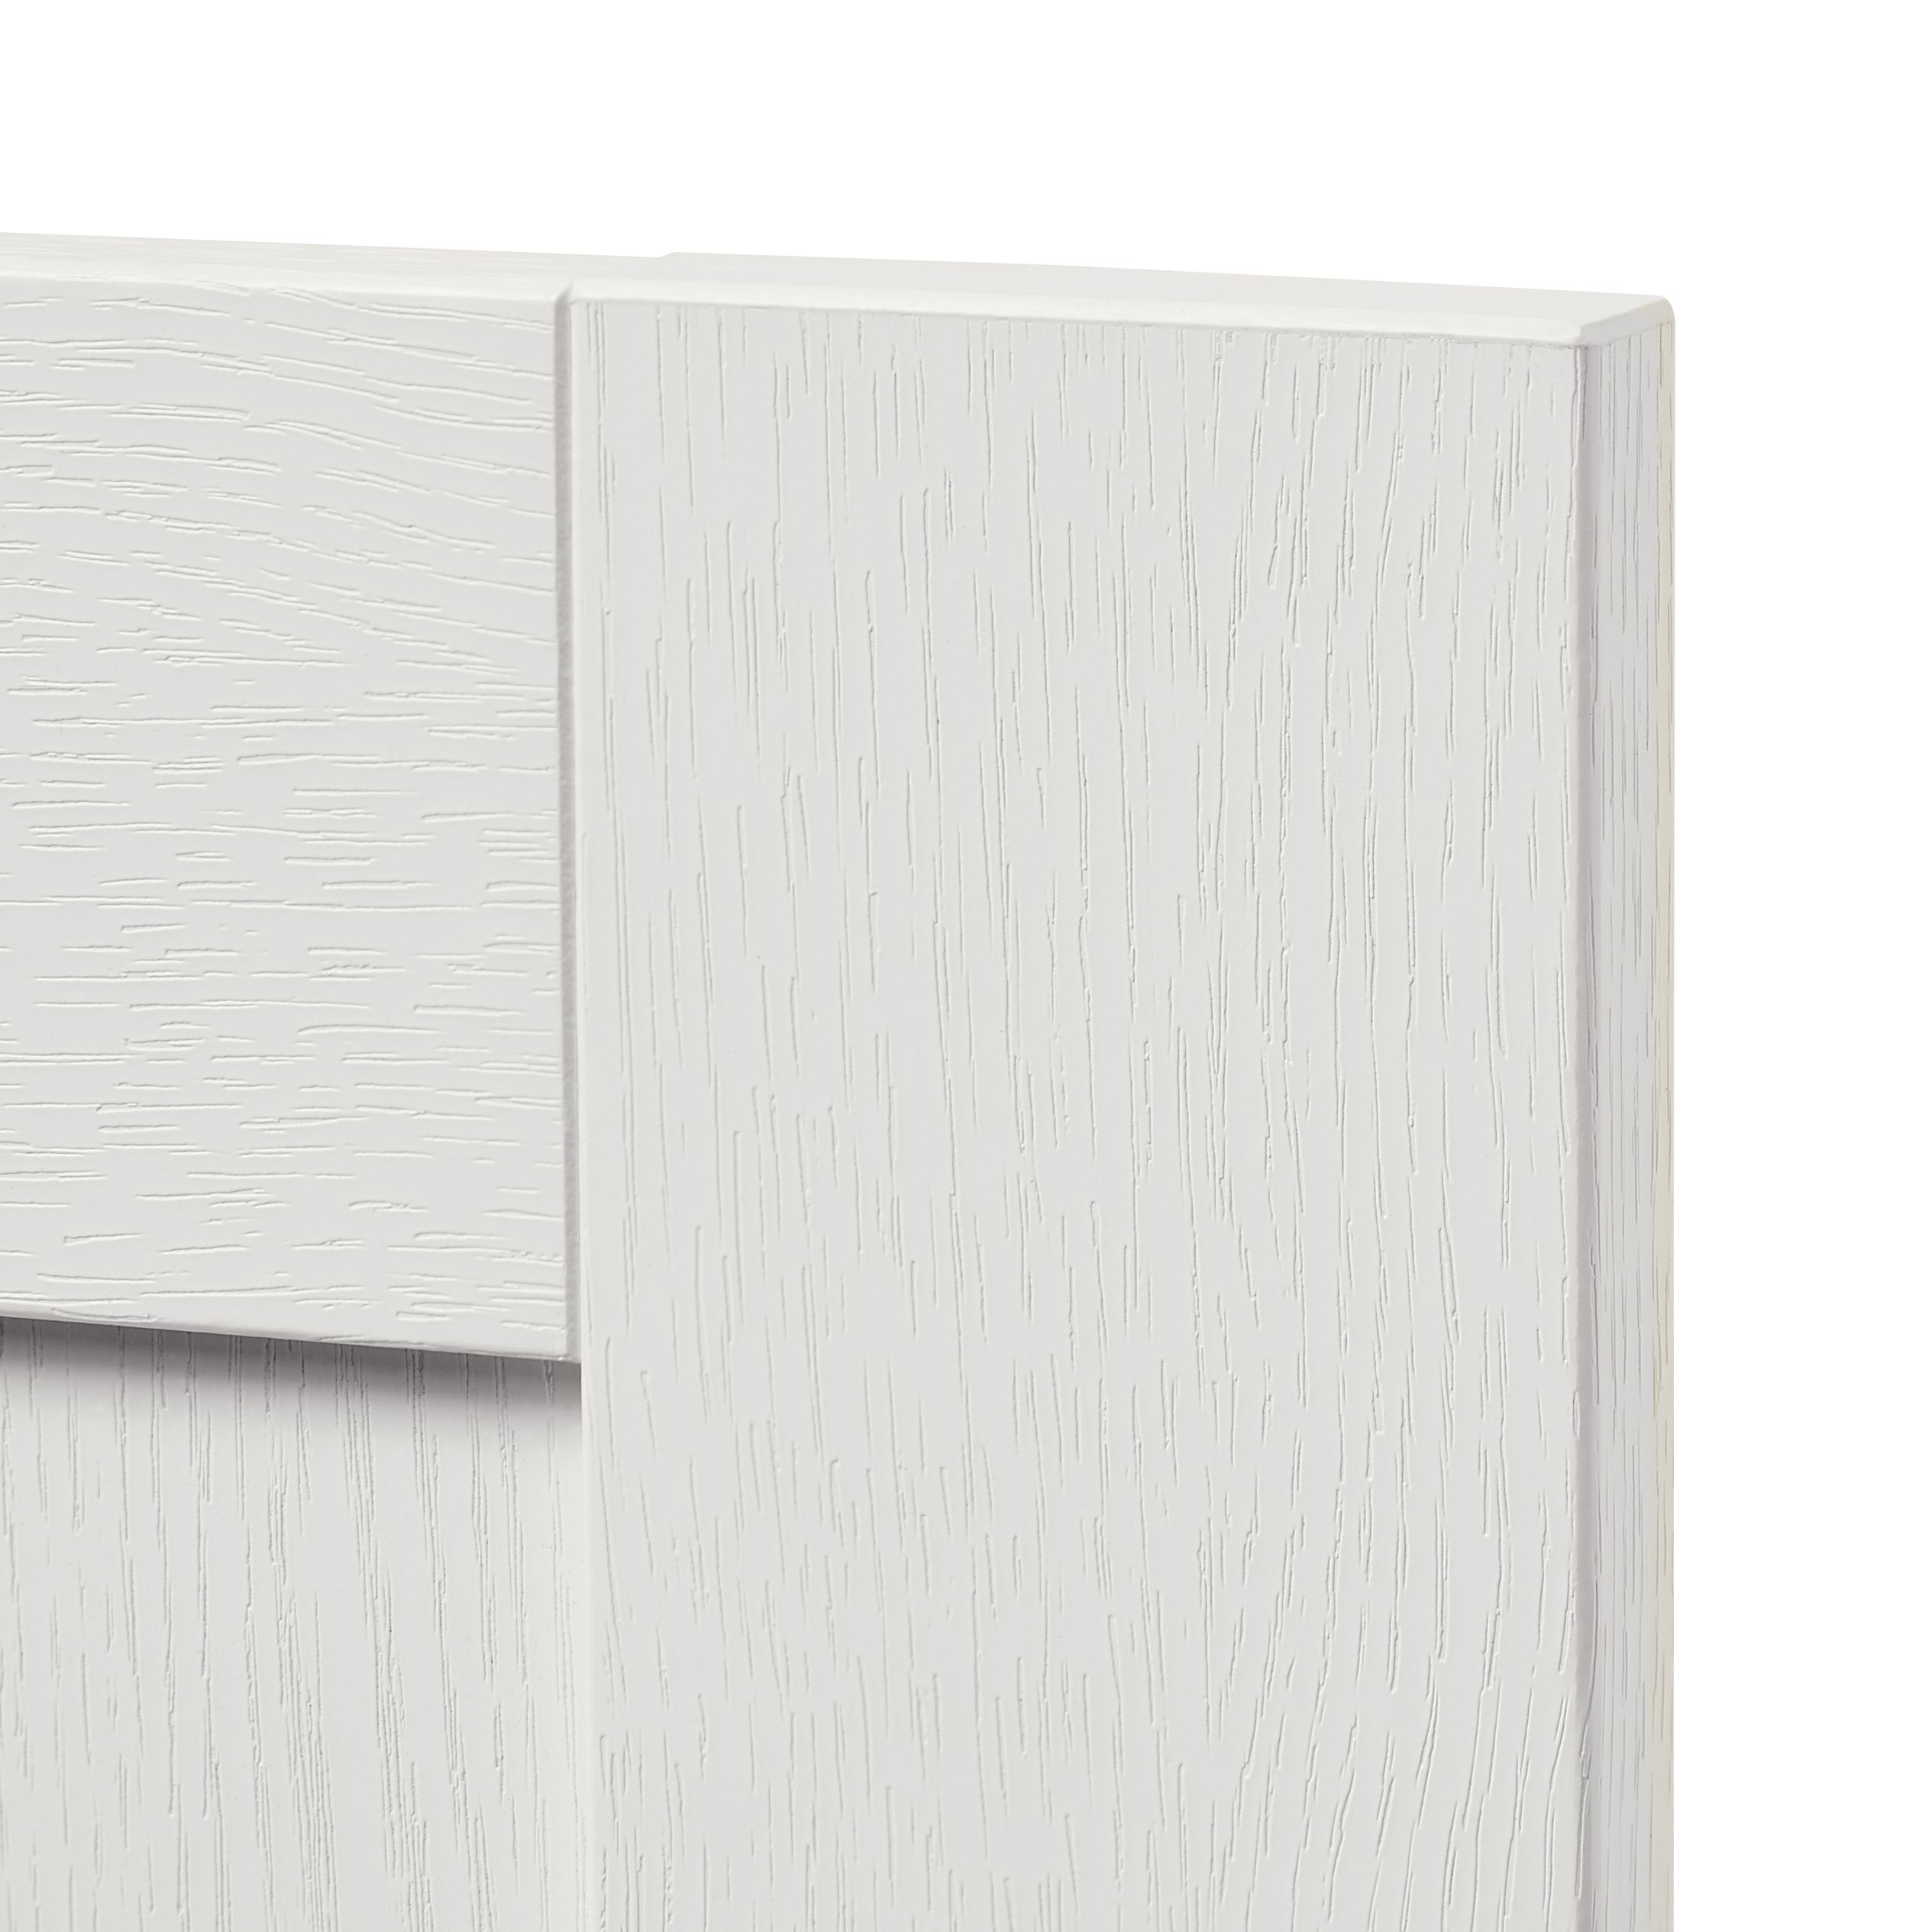 GoodHome Alpinia Matt ivory wood effect Drawer front, bridging door & bi fold door, (W)1000mm (H)356mm (T)18mm